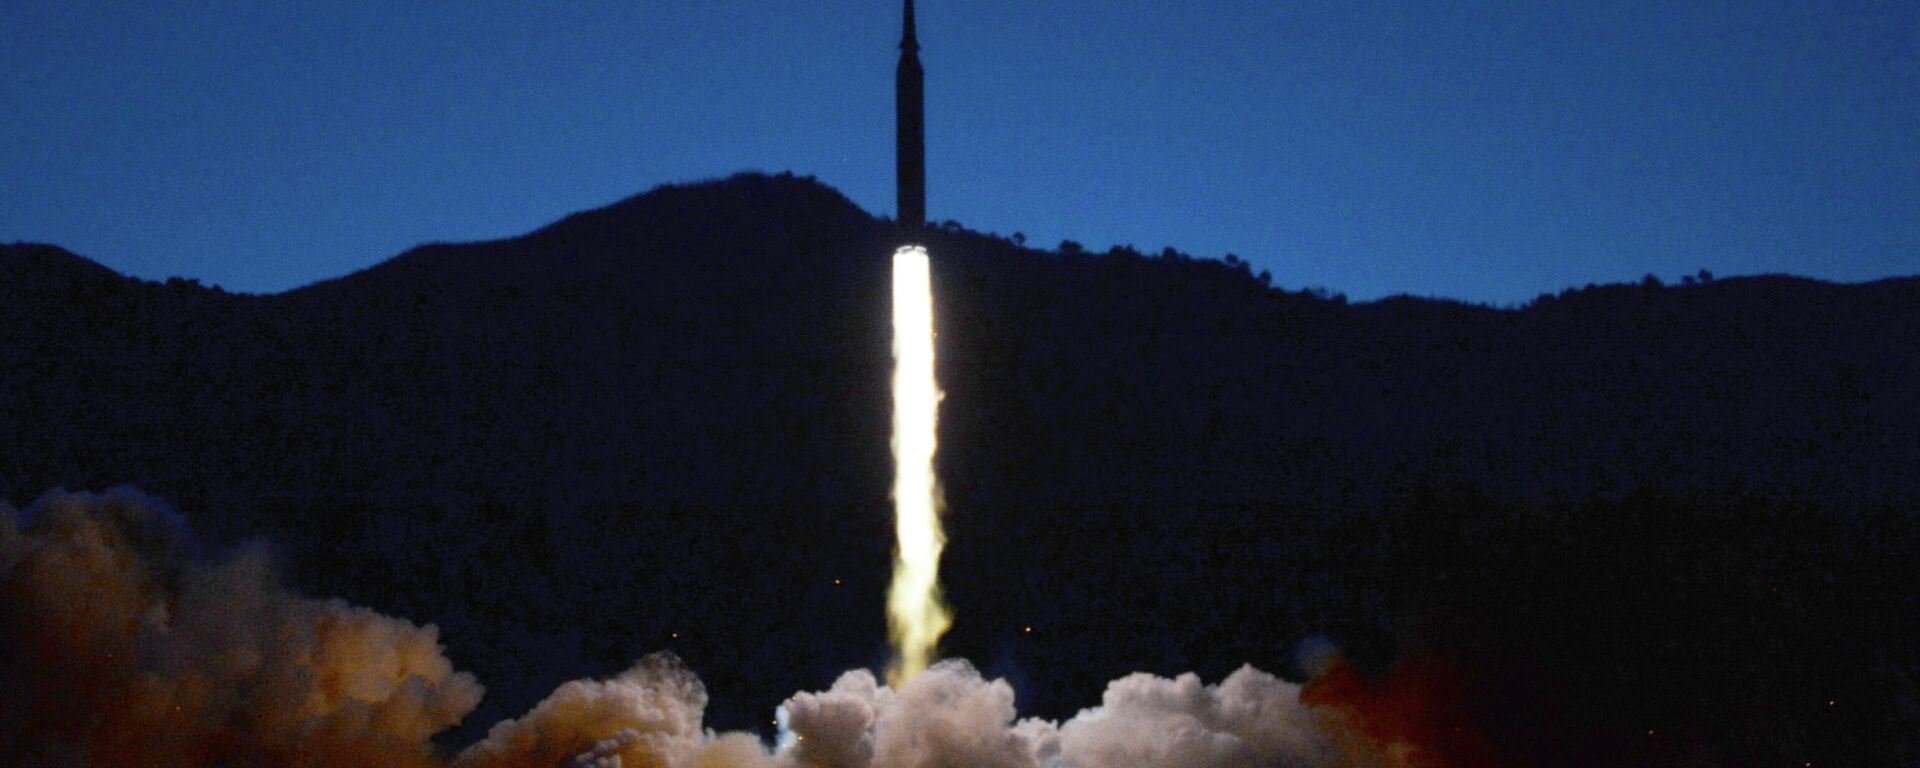 Kuzey Kore'nin, 1000 kilometre mesafedeki hedefi başarıyla vuran hipersonik füze denediği bildirildi. - Sputnik Türkiye, 1920, 09.03.2022